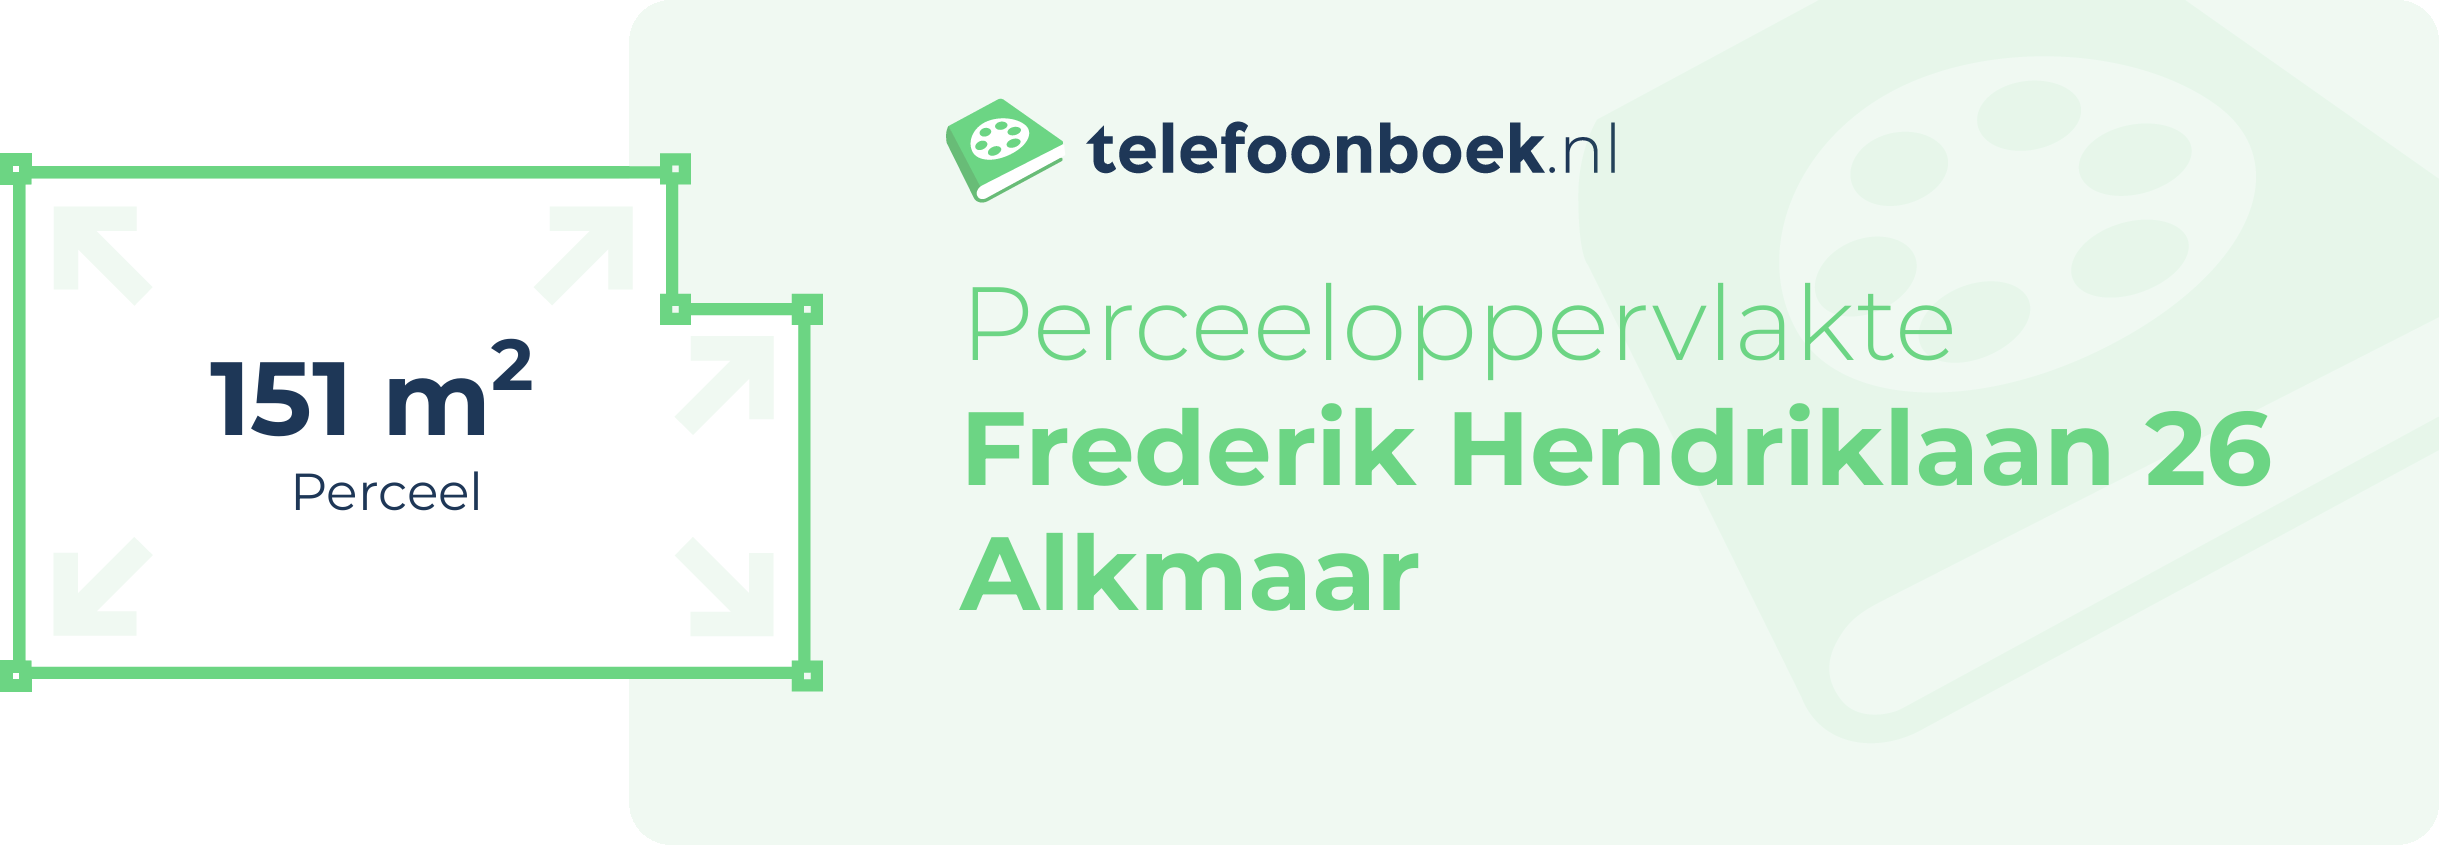 Perceeloppervlakte Frederik Hendriklaan 26 Alkmaar